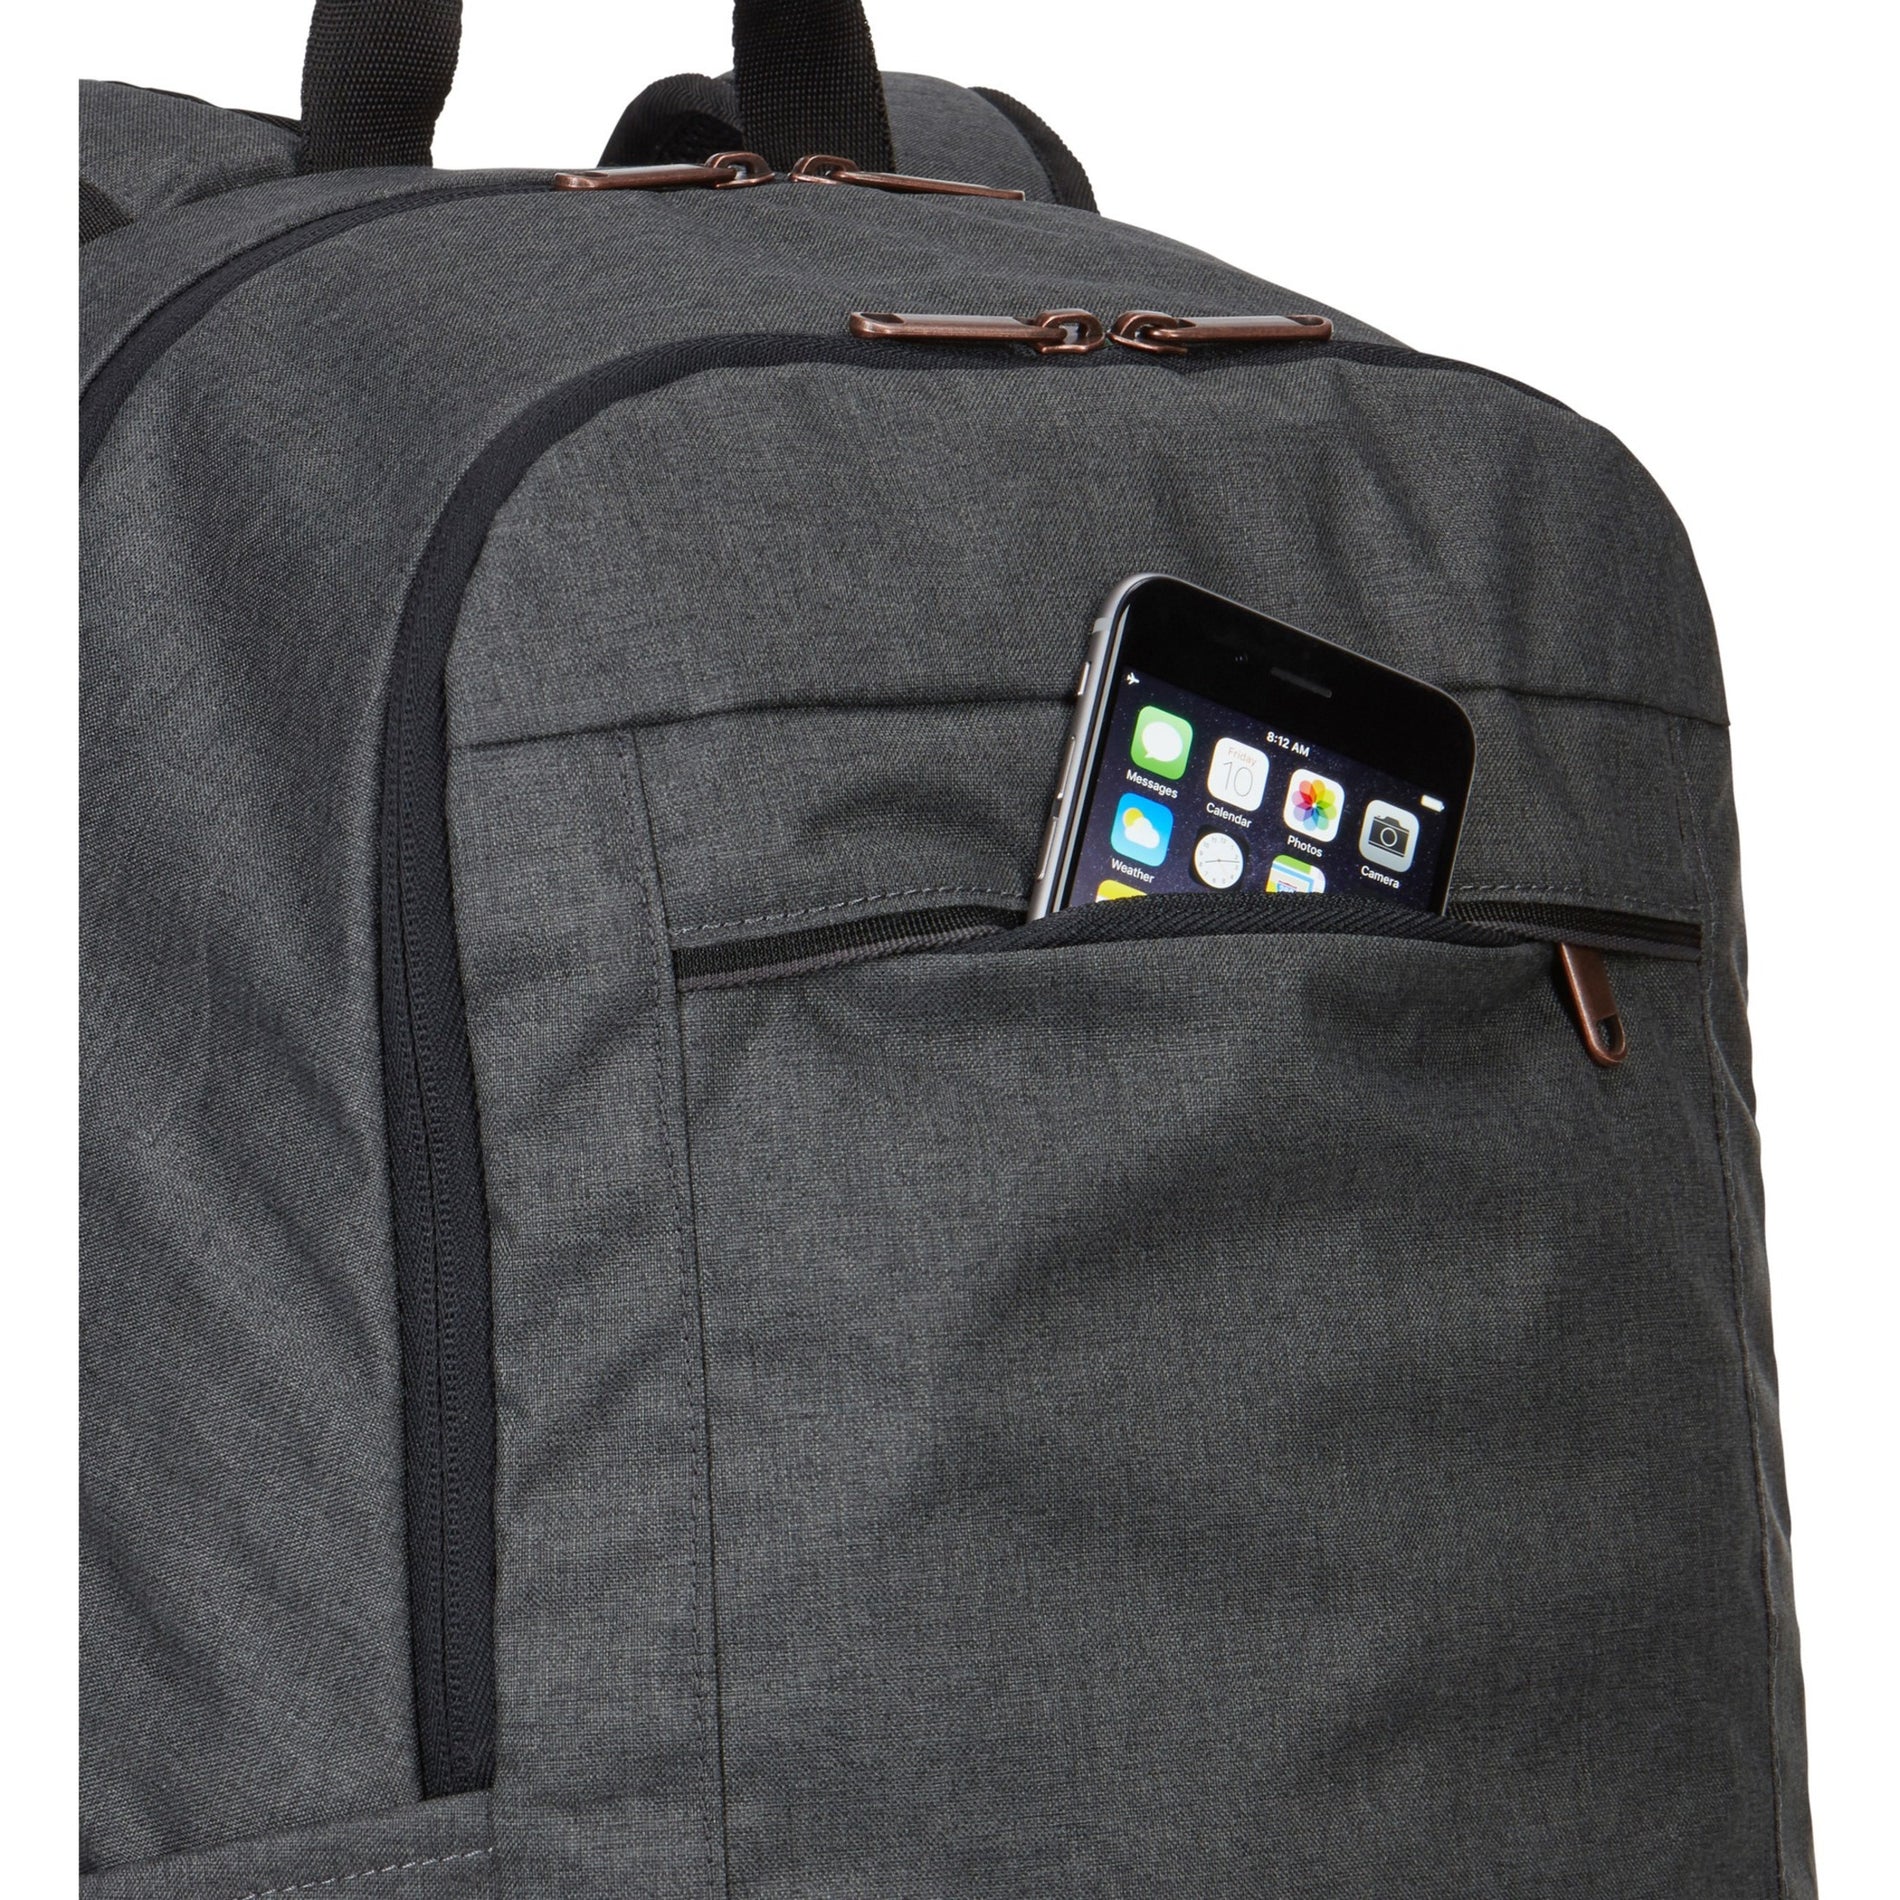 Case Logic 3204192 Era ERABP-116 15.6" Laptop Backpack, Obsidian, Limited Warranty 25 Year